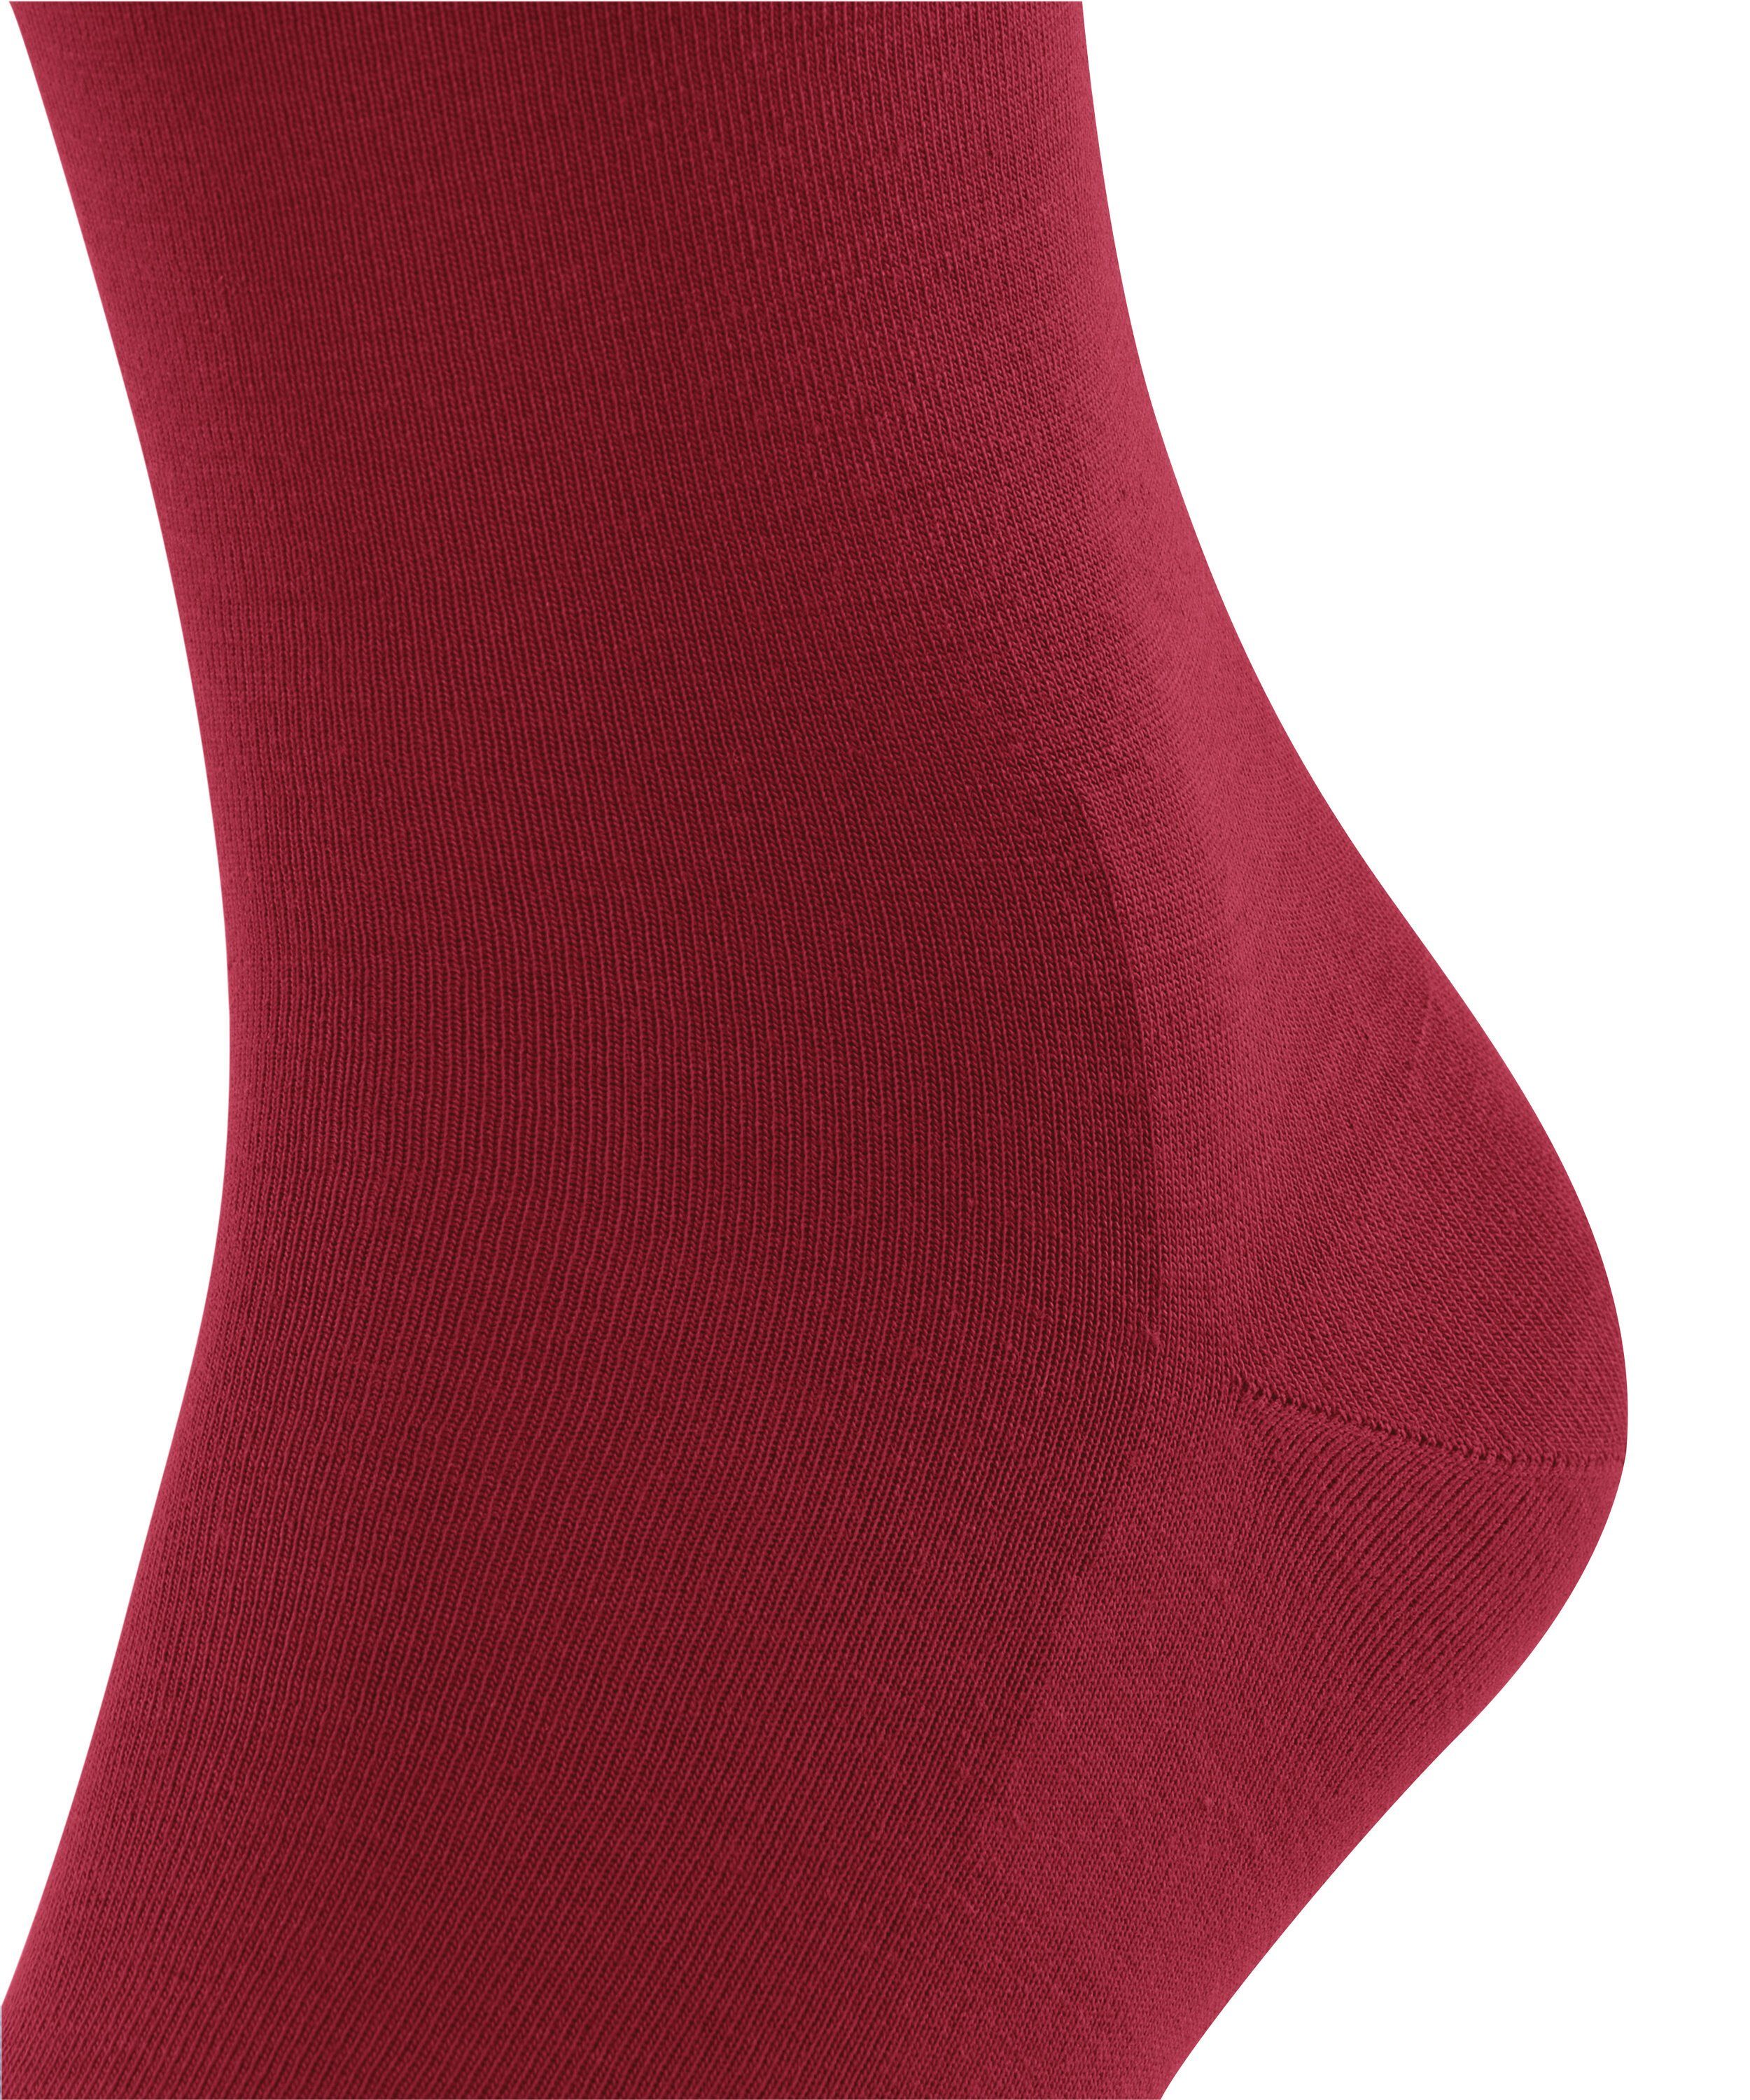 (1-Paar) FALKE (8228) Socken ClimaWool scarlet